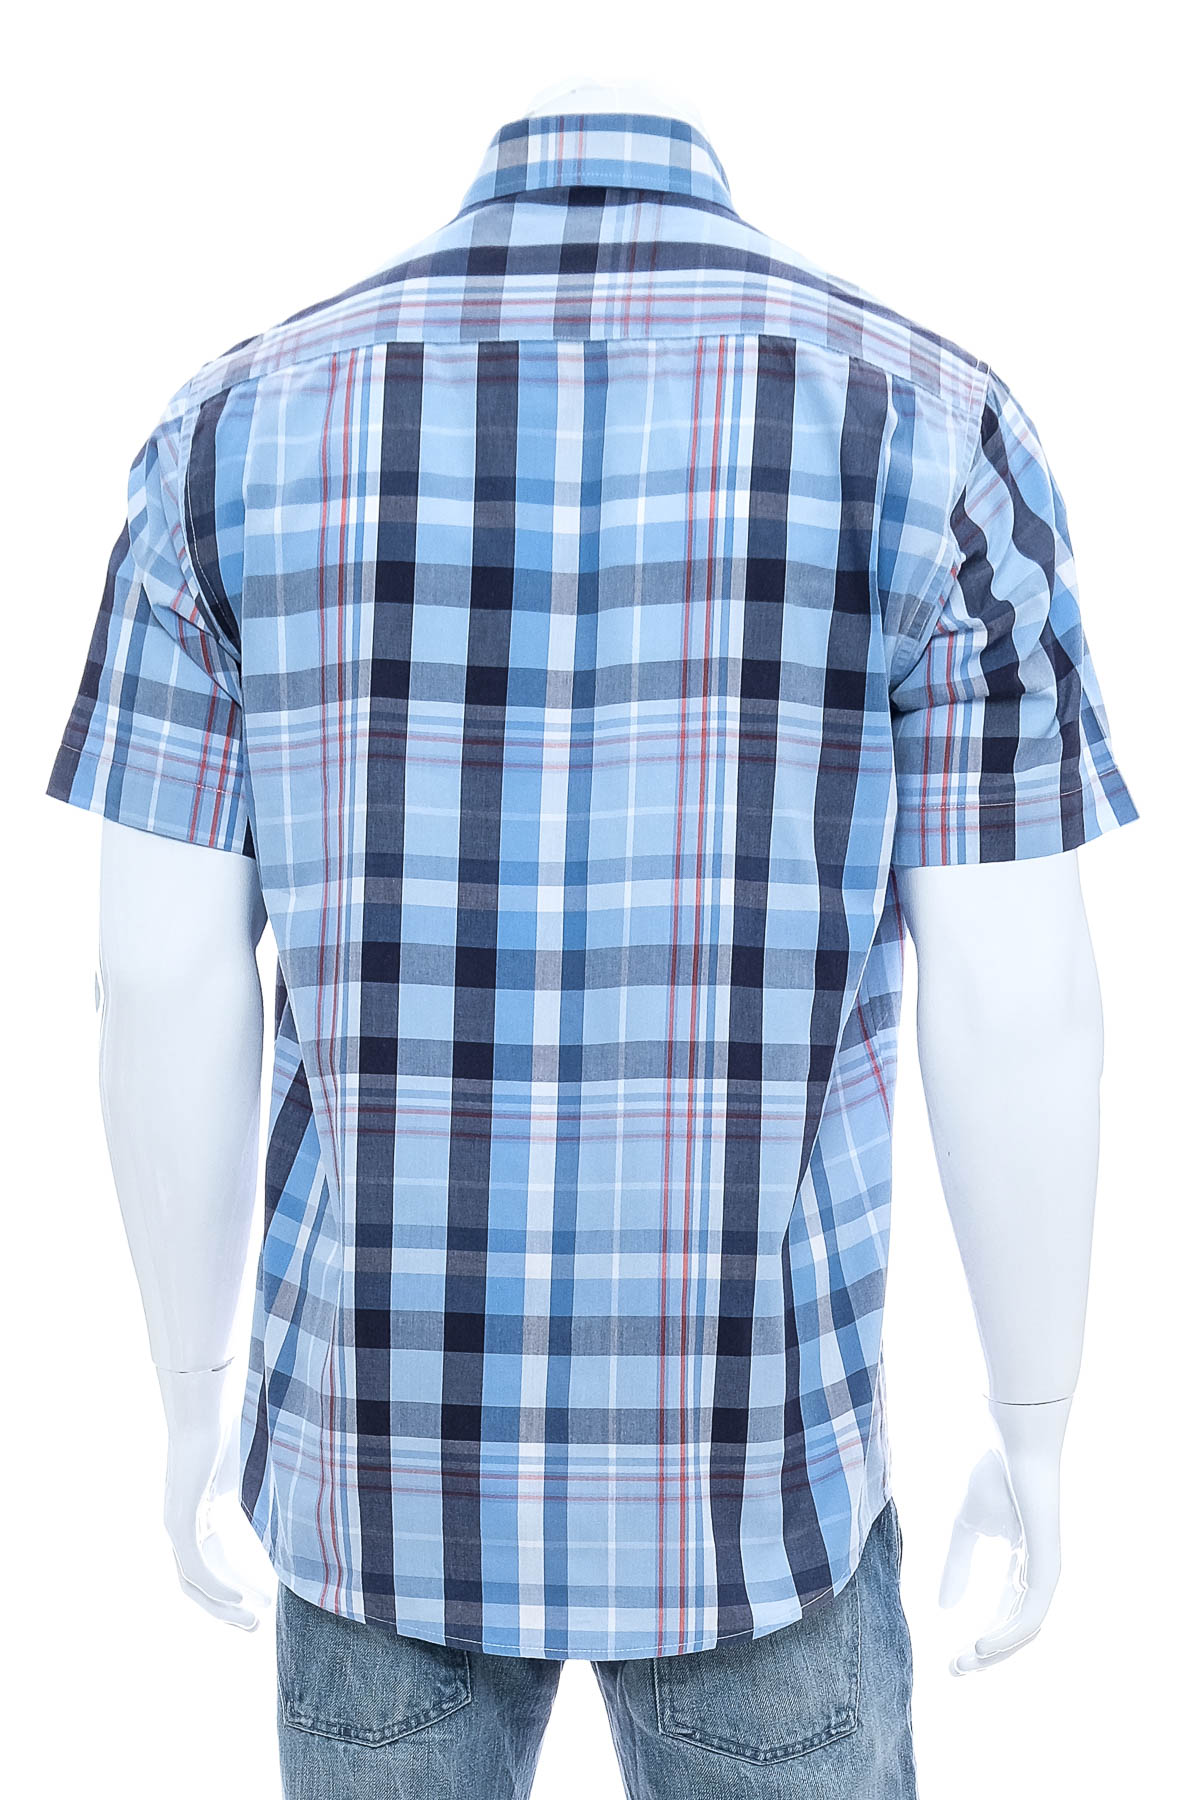 Ανδρικό πουκάμισο - Henderson - 1